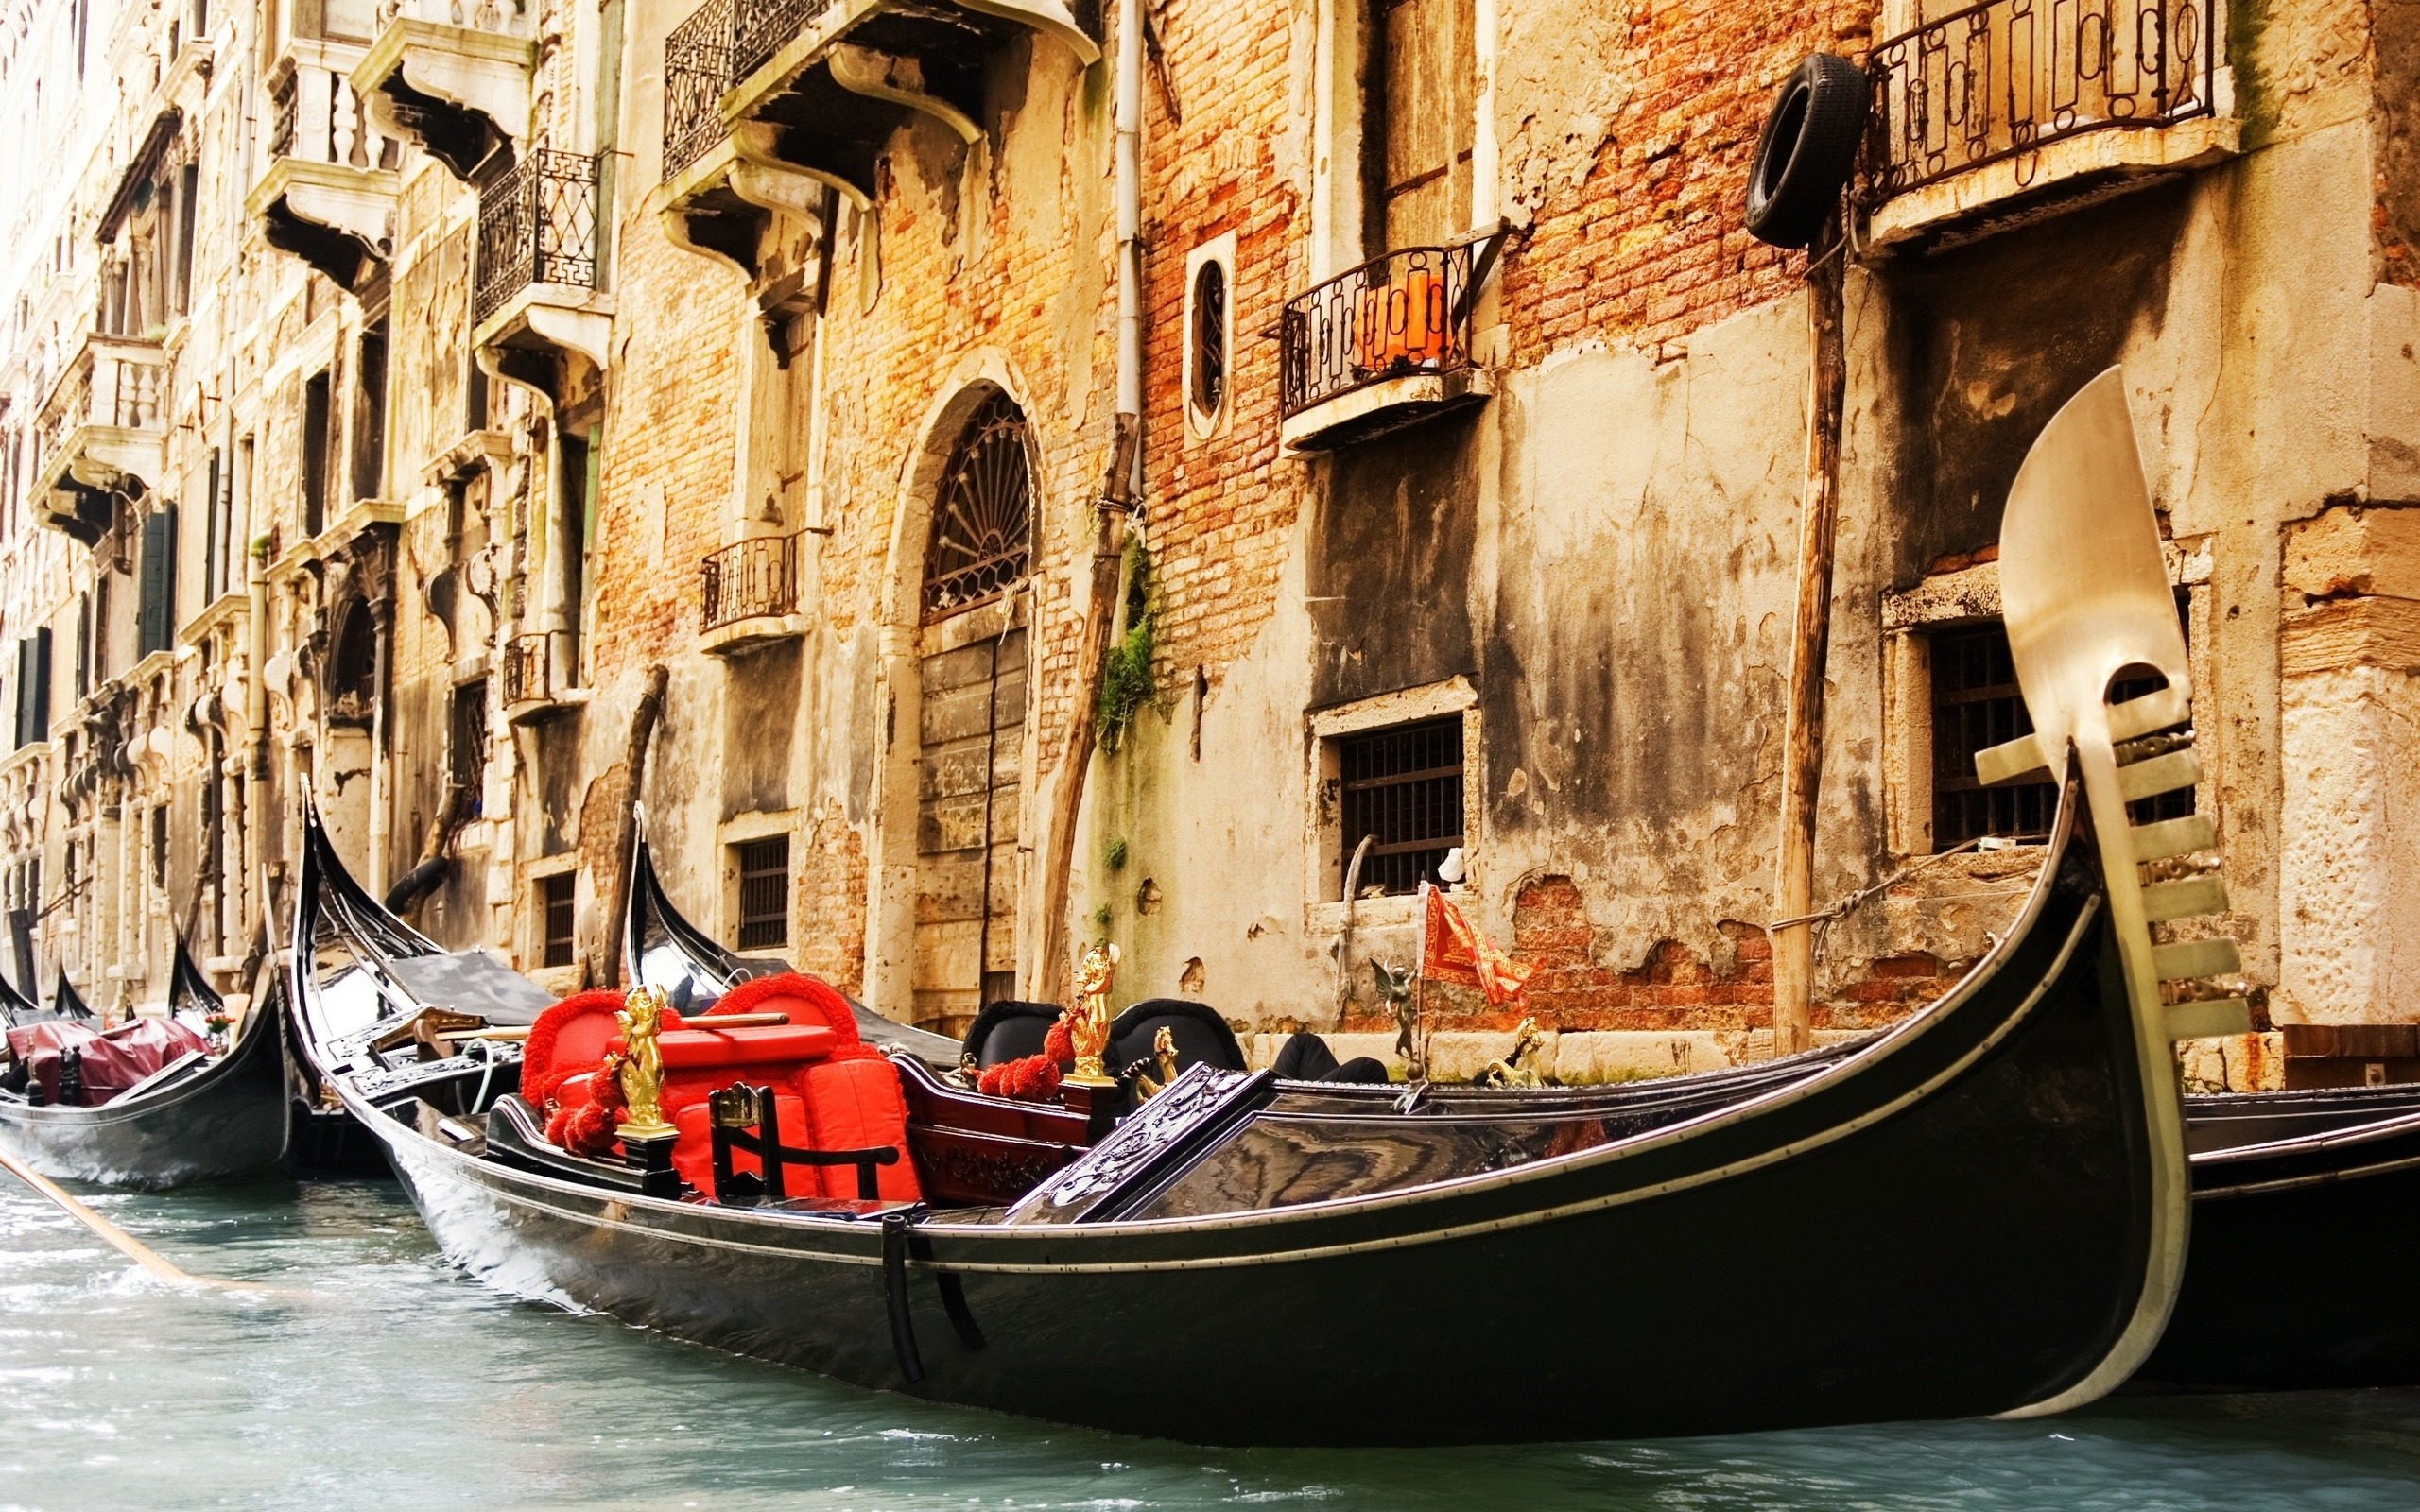 vehicles, boat, gondola, italy, venice Free Stock Photo